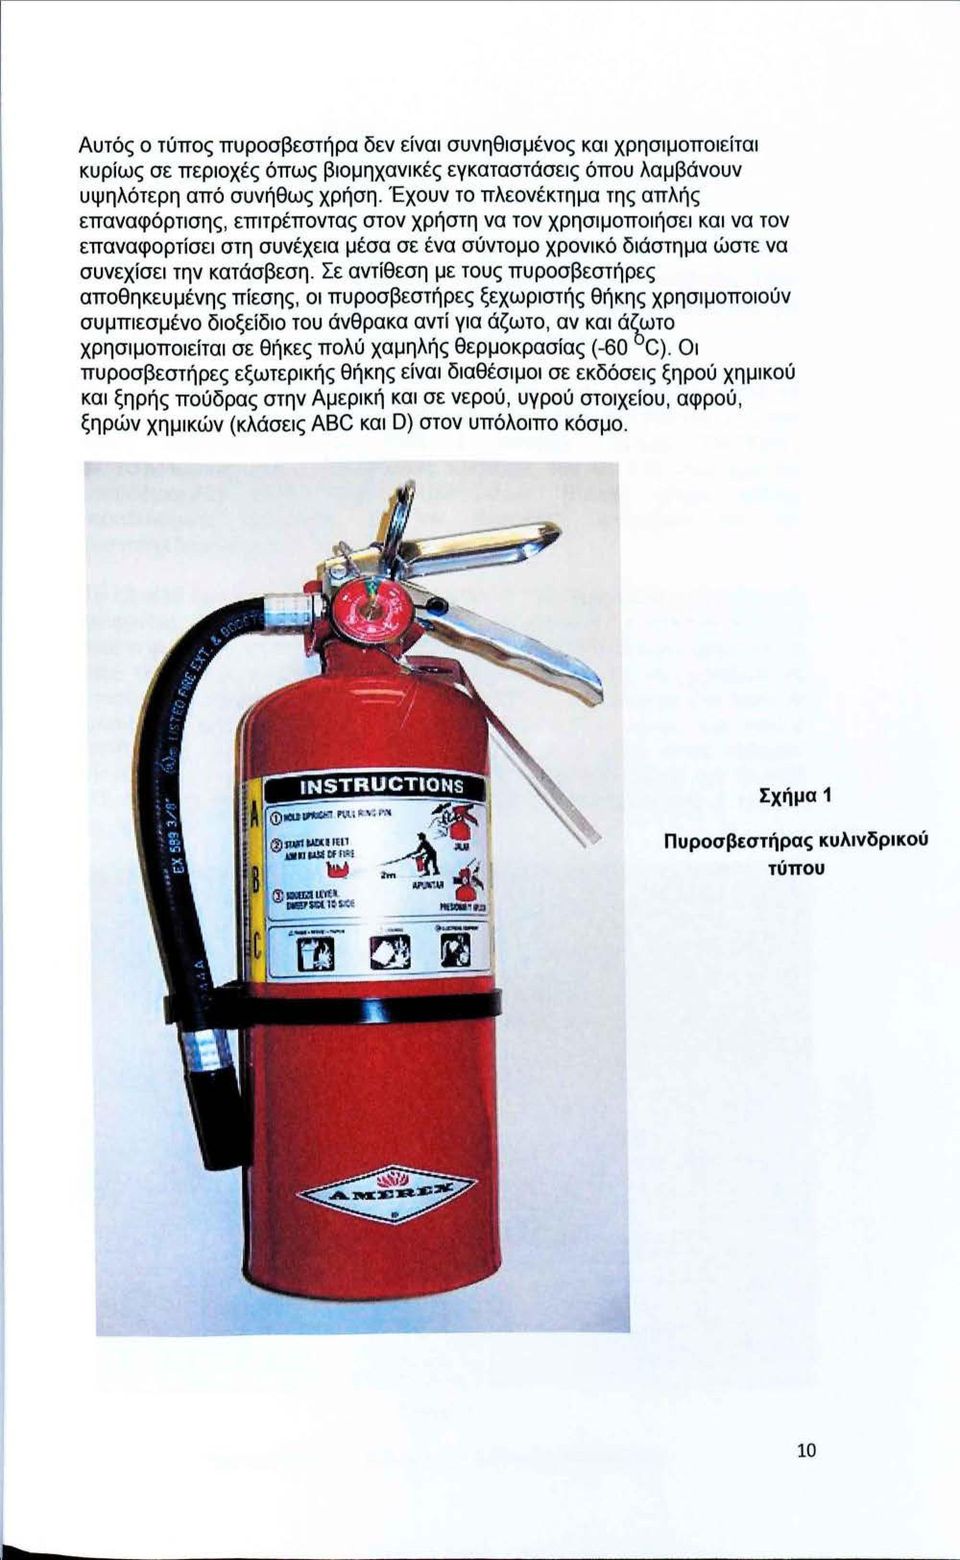 Σε αντίθεση με τους πυροσβεστήρες αποθηκευμένης πίεσης, οι πυροσβεστήρες ξεχωριστής θήκης χρησιμοποιούν συμπιεσμένο διοξείδιο του άνθρακα αντί για άζωτο, αν και ά~ωτο χρησιμοποιείται σε θήκες πολύ